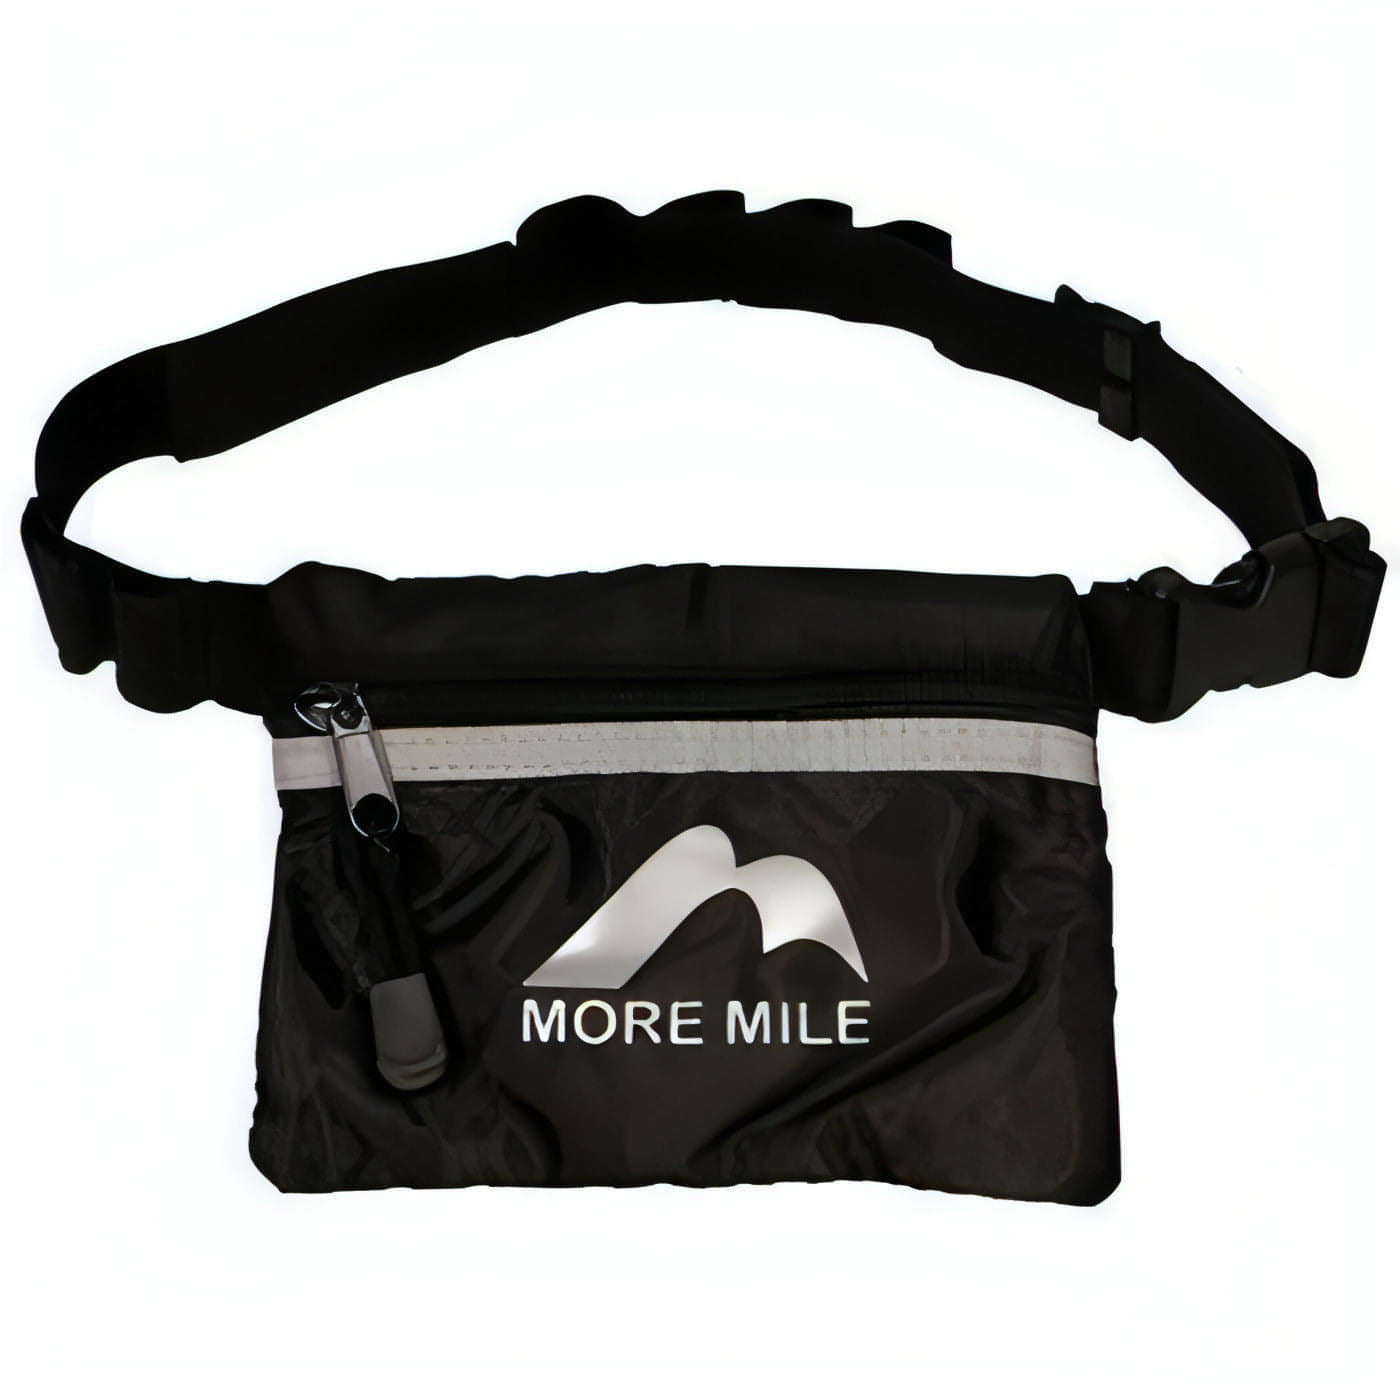 More Mile Trail Running Waist Bag - Black 5055604350018 - Start Fitness